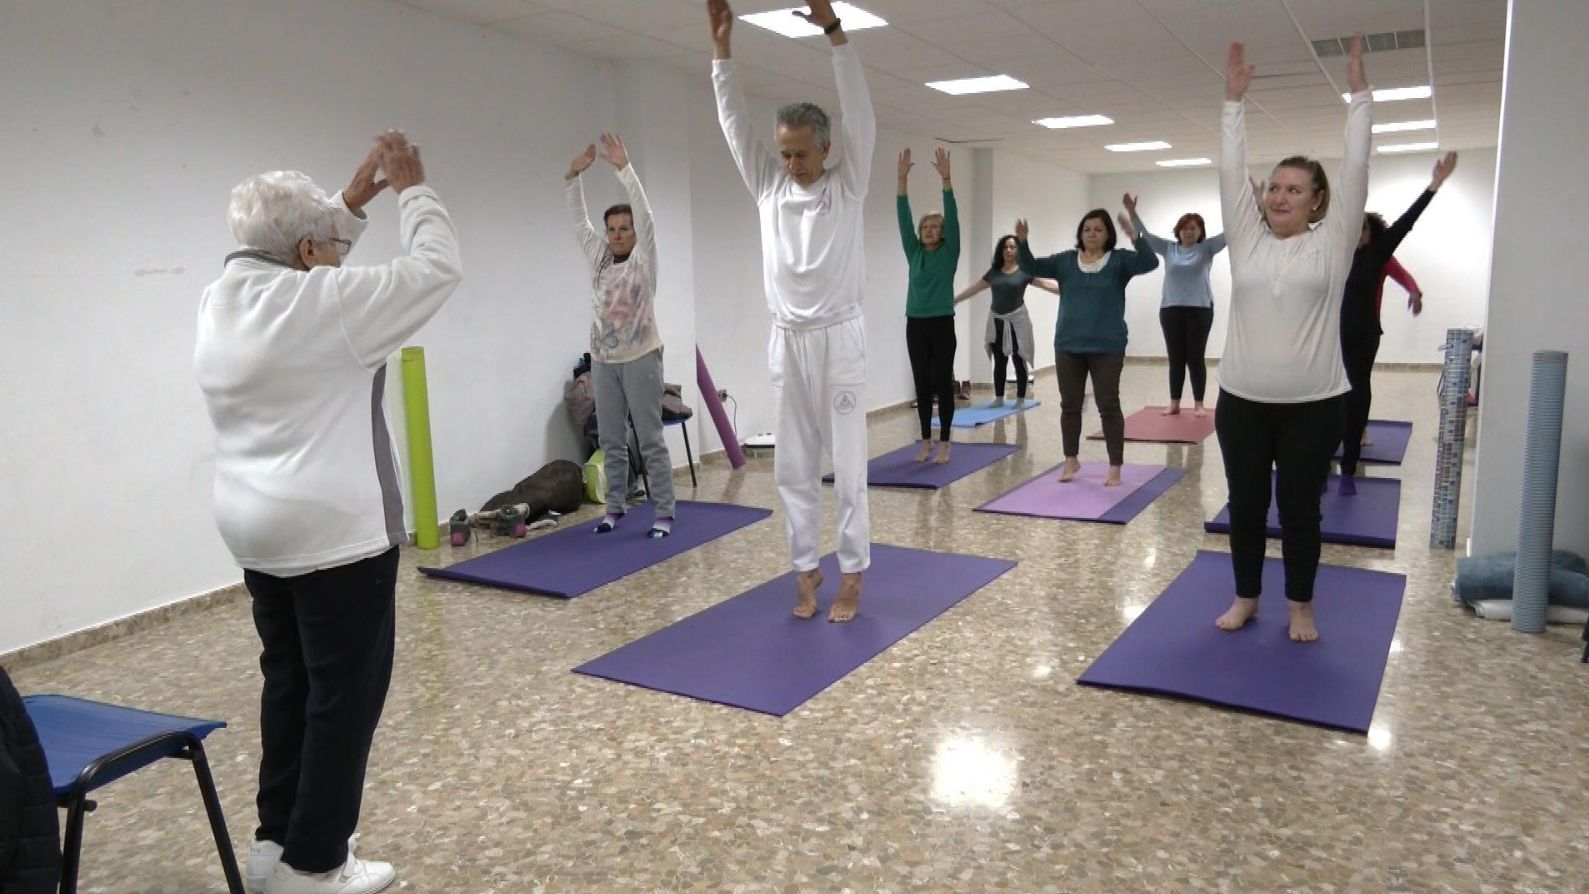 Carmela, la yogui granadina que a sus 91 años sigue impartiendo clases: “Me llena, me da vida”